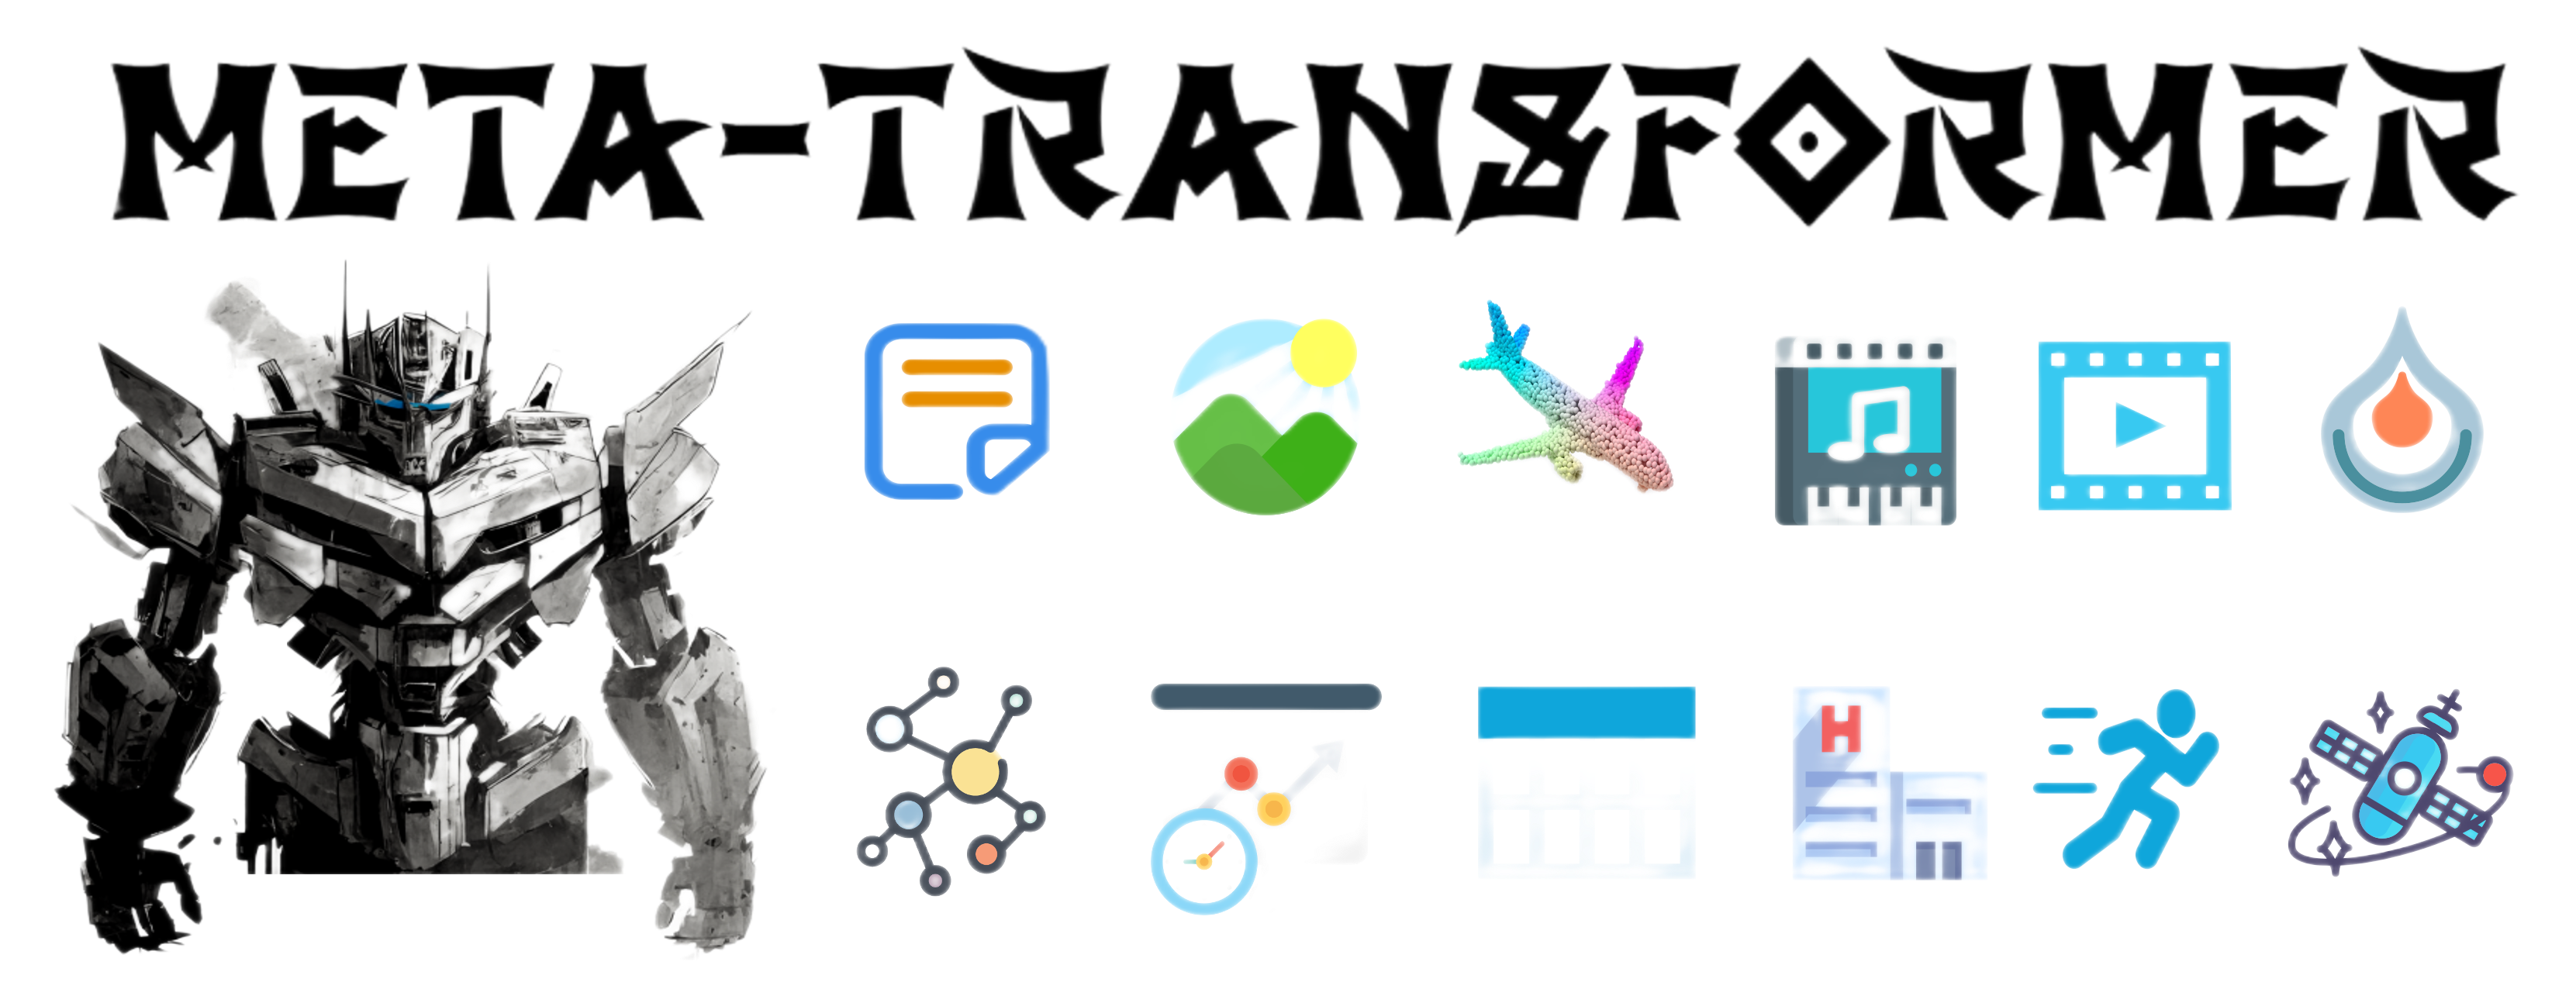 Meta-Transformer_banner.png